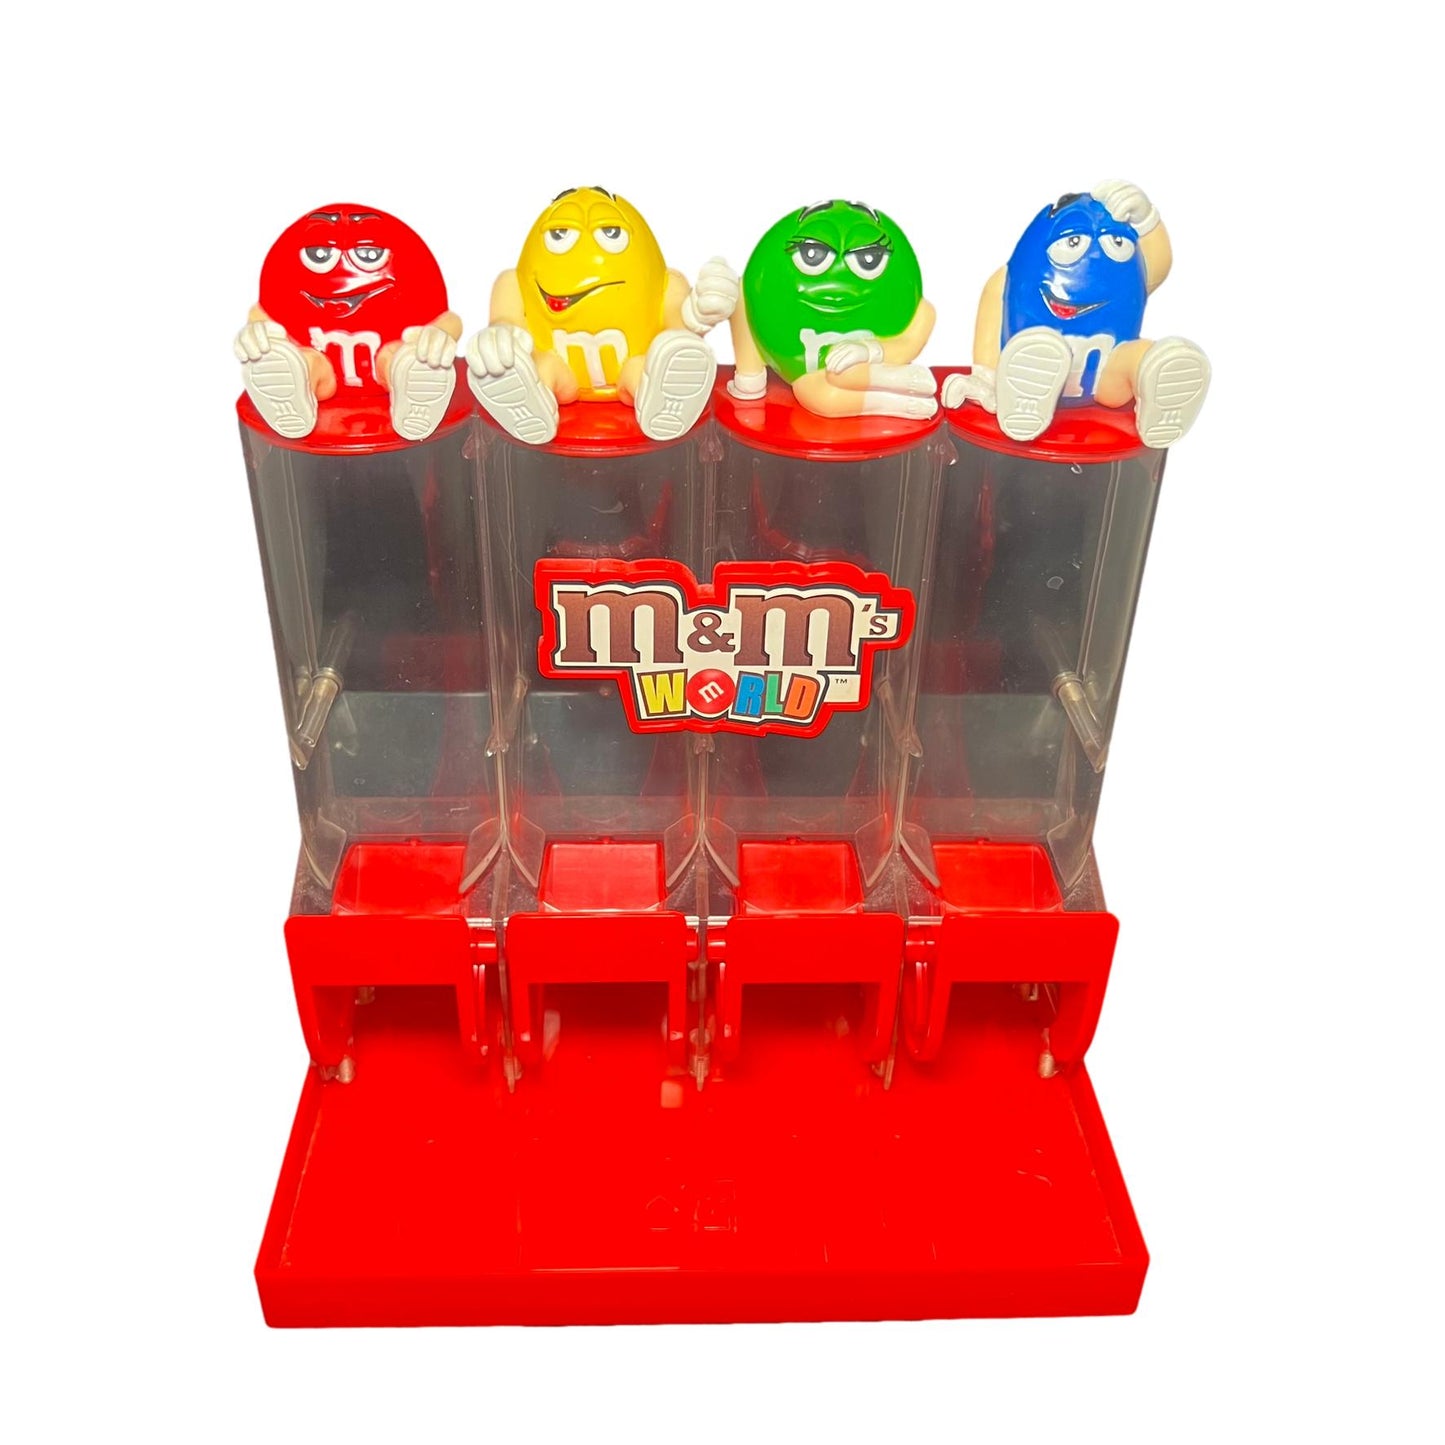 M&M World Candy Dispenser